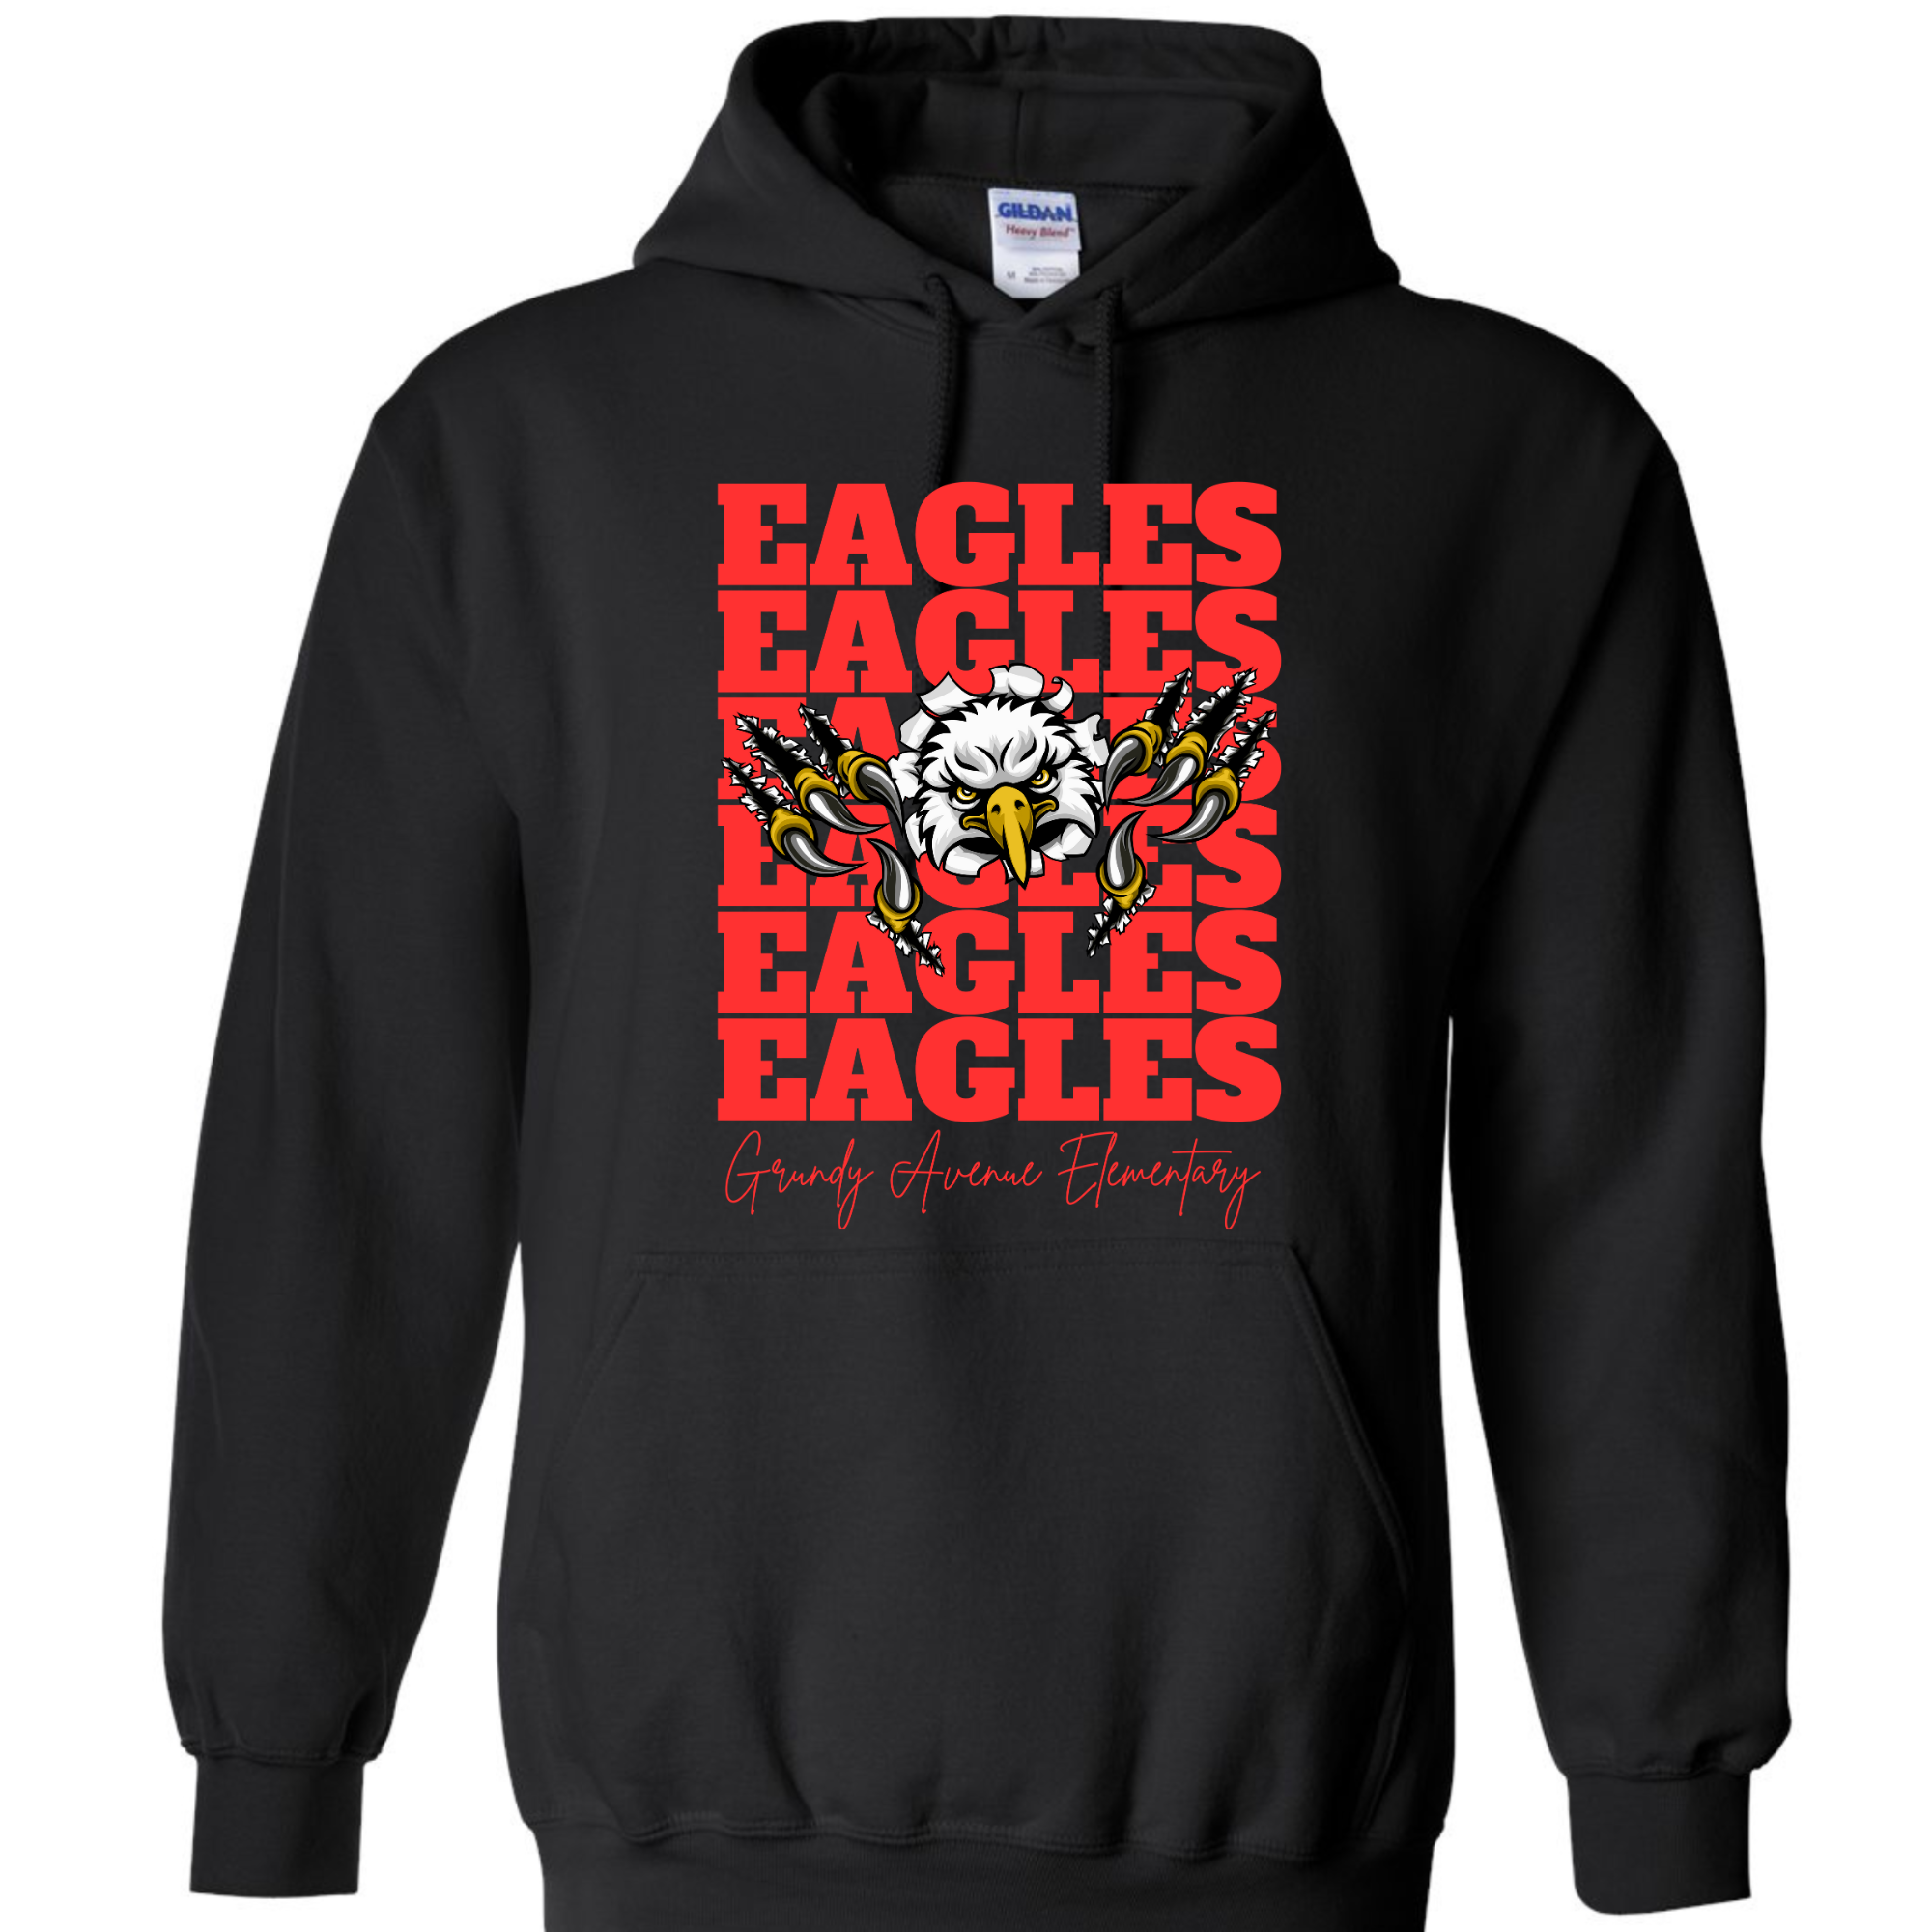 Eagles burst thru( hoodie or crewneck sweatshirt) PLEASE CHOOSE!!!!